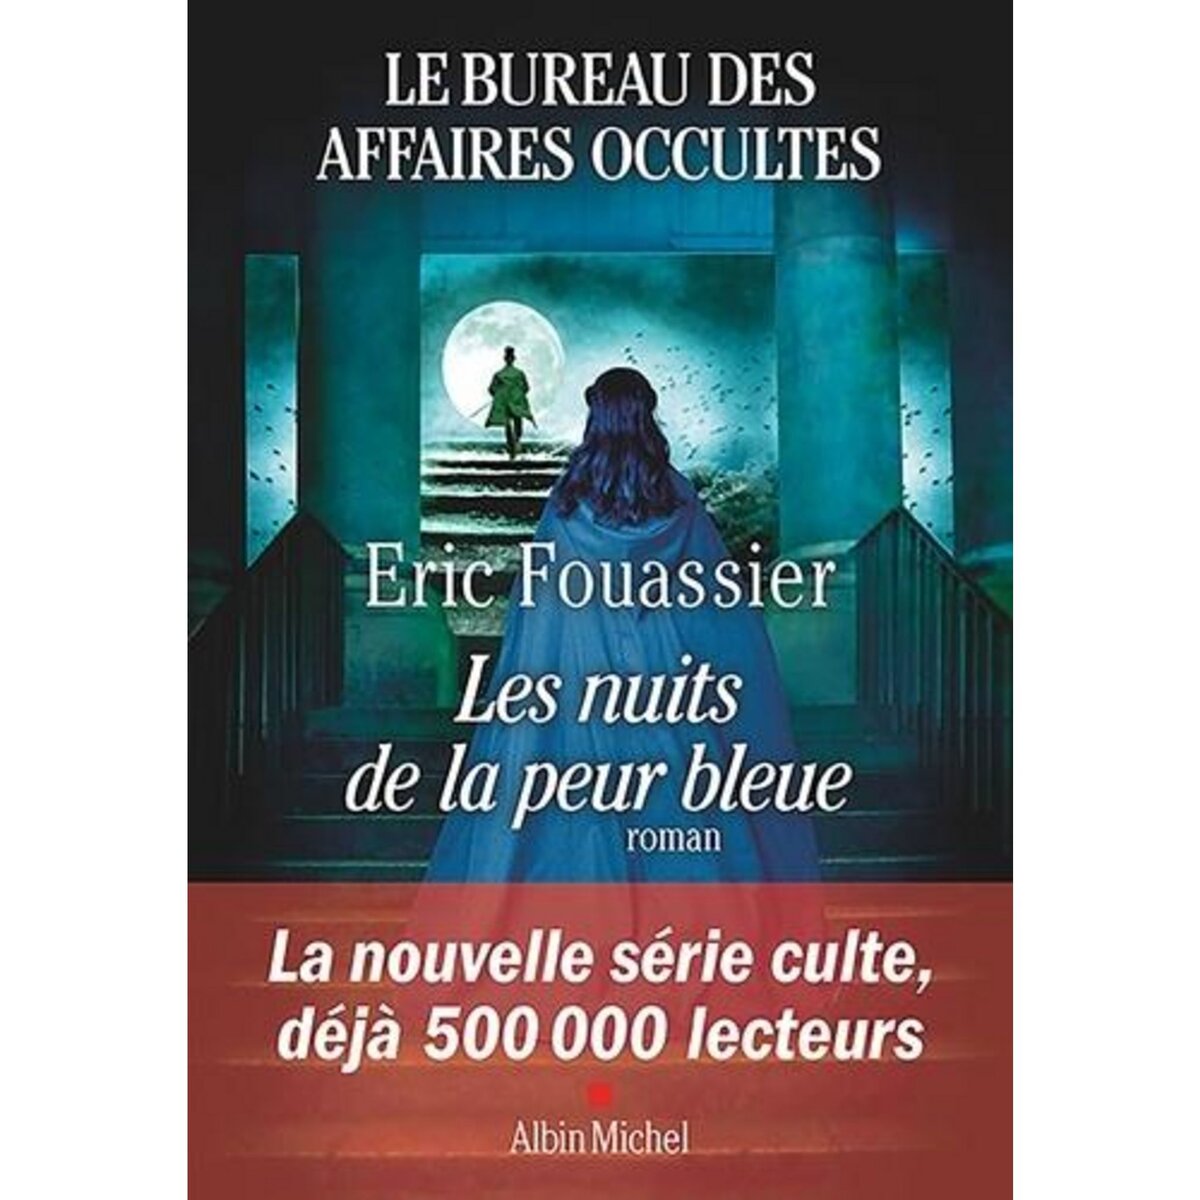  LE BUREAU DES AFFAIRES OCCULTES TOME 3 : LES NUITS DE LA PEUR BLEUE, Fouassier Eric